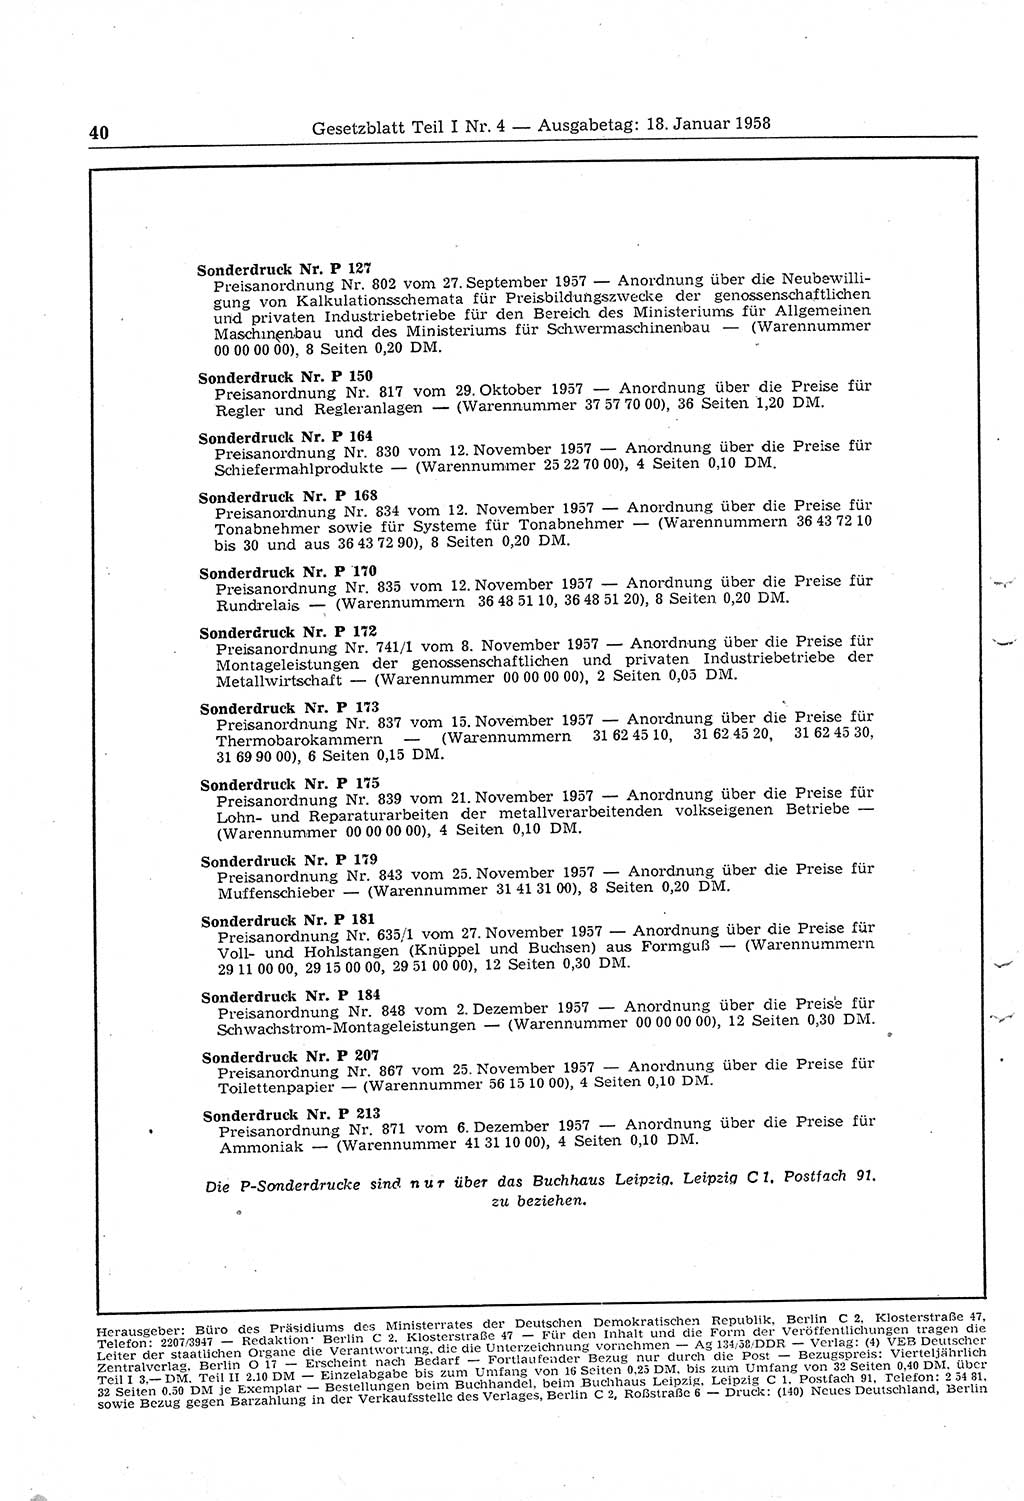 Gesetzblatt (GBl.) der Deutschen Demokratischen Republik (DDR) Teil Ⅰ 1958, Seite 40 (GBl. DDR Ⅰ 1958, S. 40)